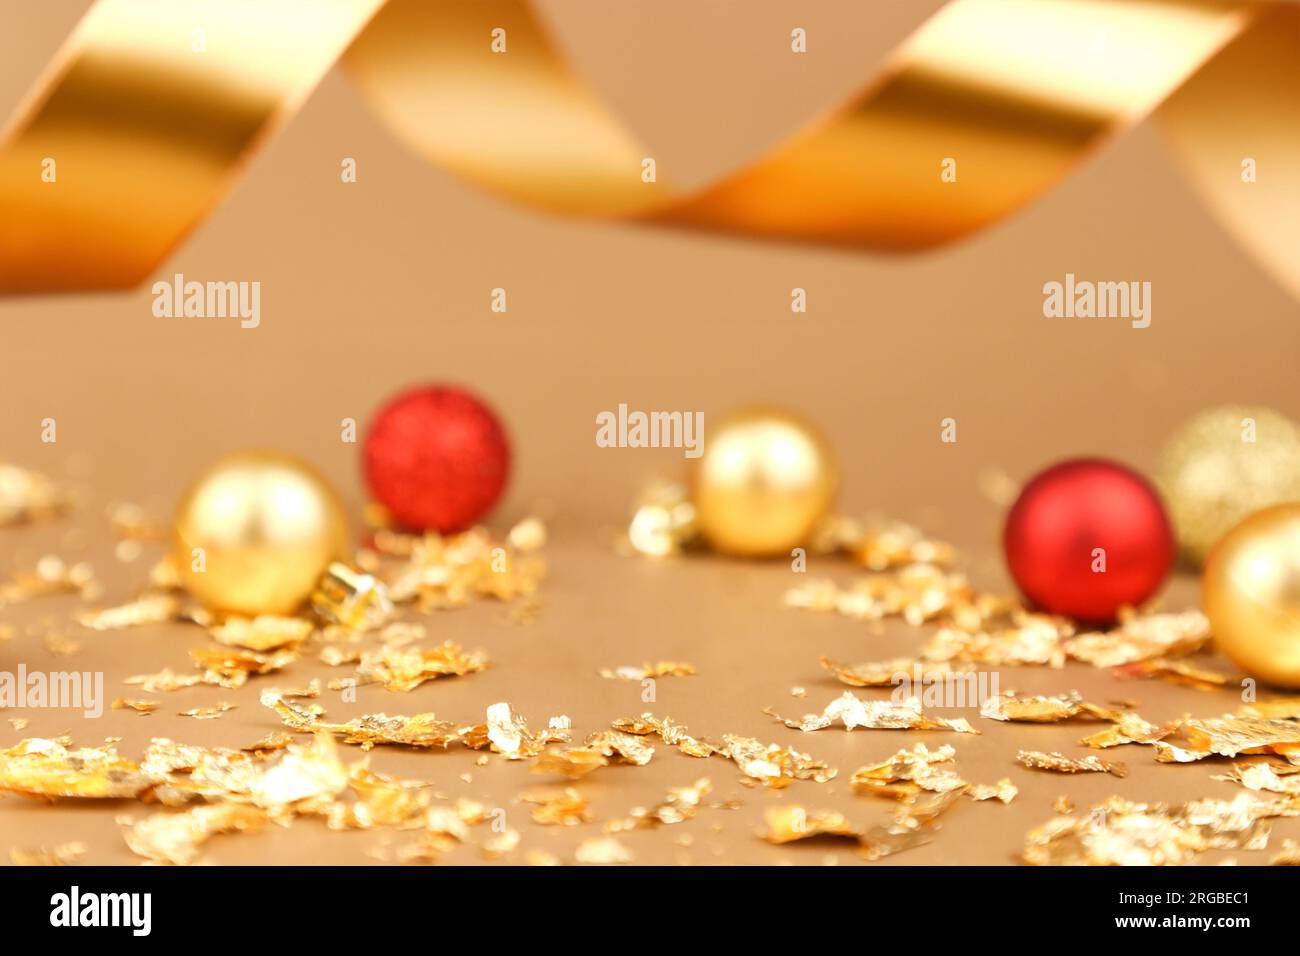 Hintergrund für Produktwerbung. Rote goldene weihnachtskugeln, goldene Papierknallstücke, goldenes Band auf goldenem Hintergrund. Freier Platz Stockfoto